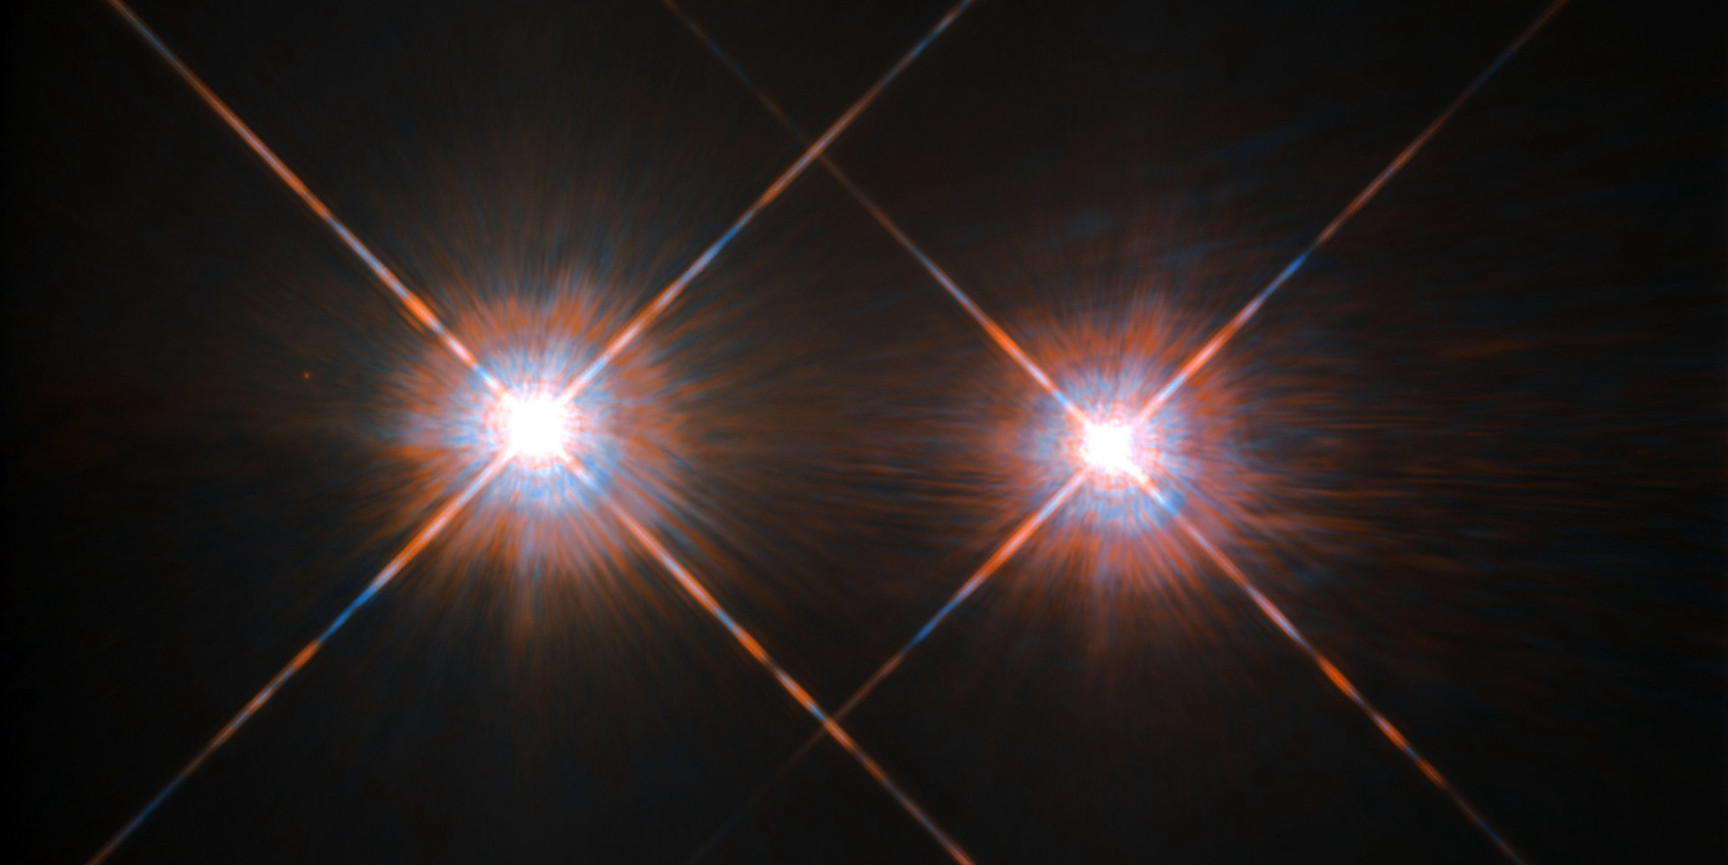 Bild von α Centauri A und α Centauri B, aufgenommen mit dem Hubble-Weltraumteleskop